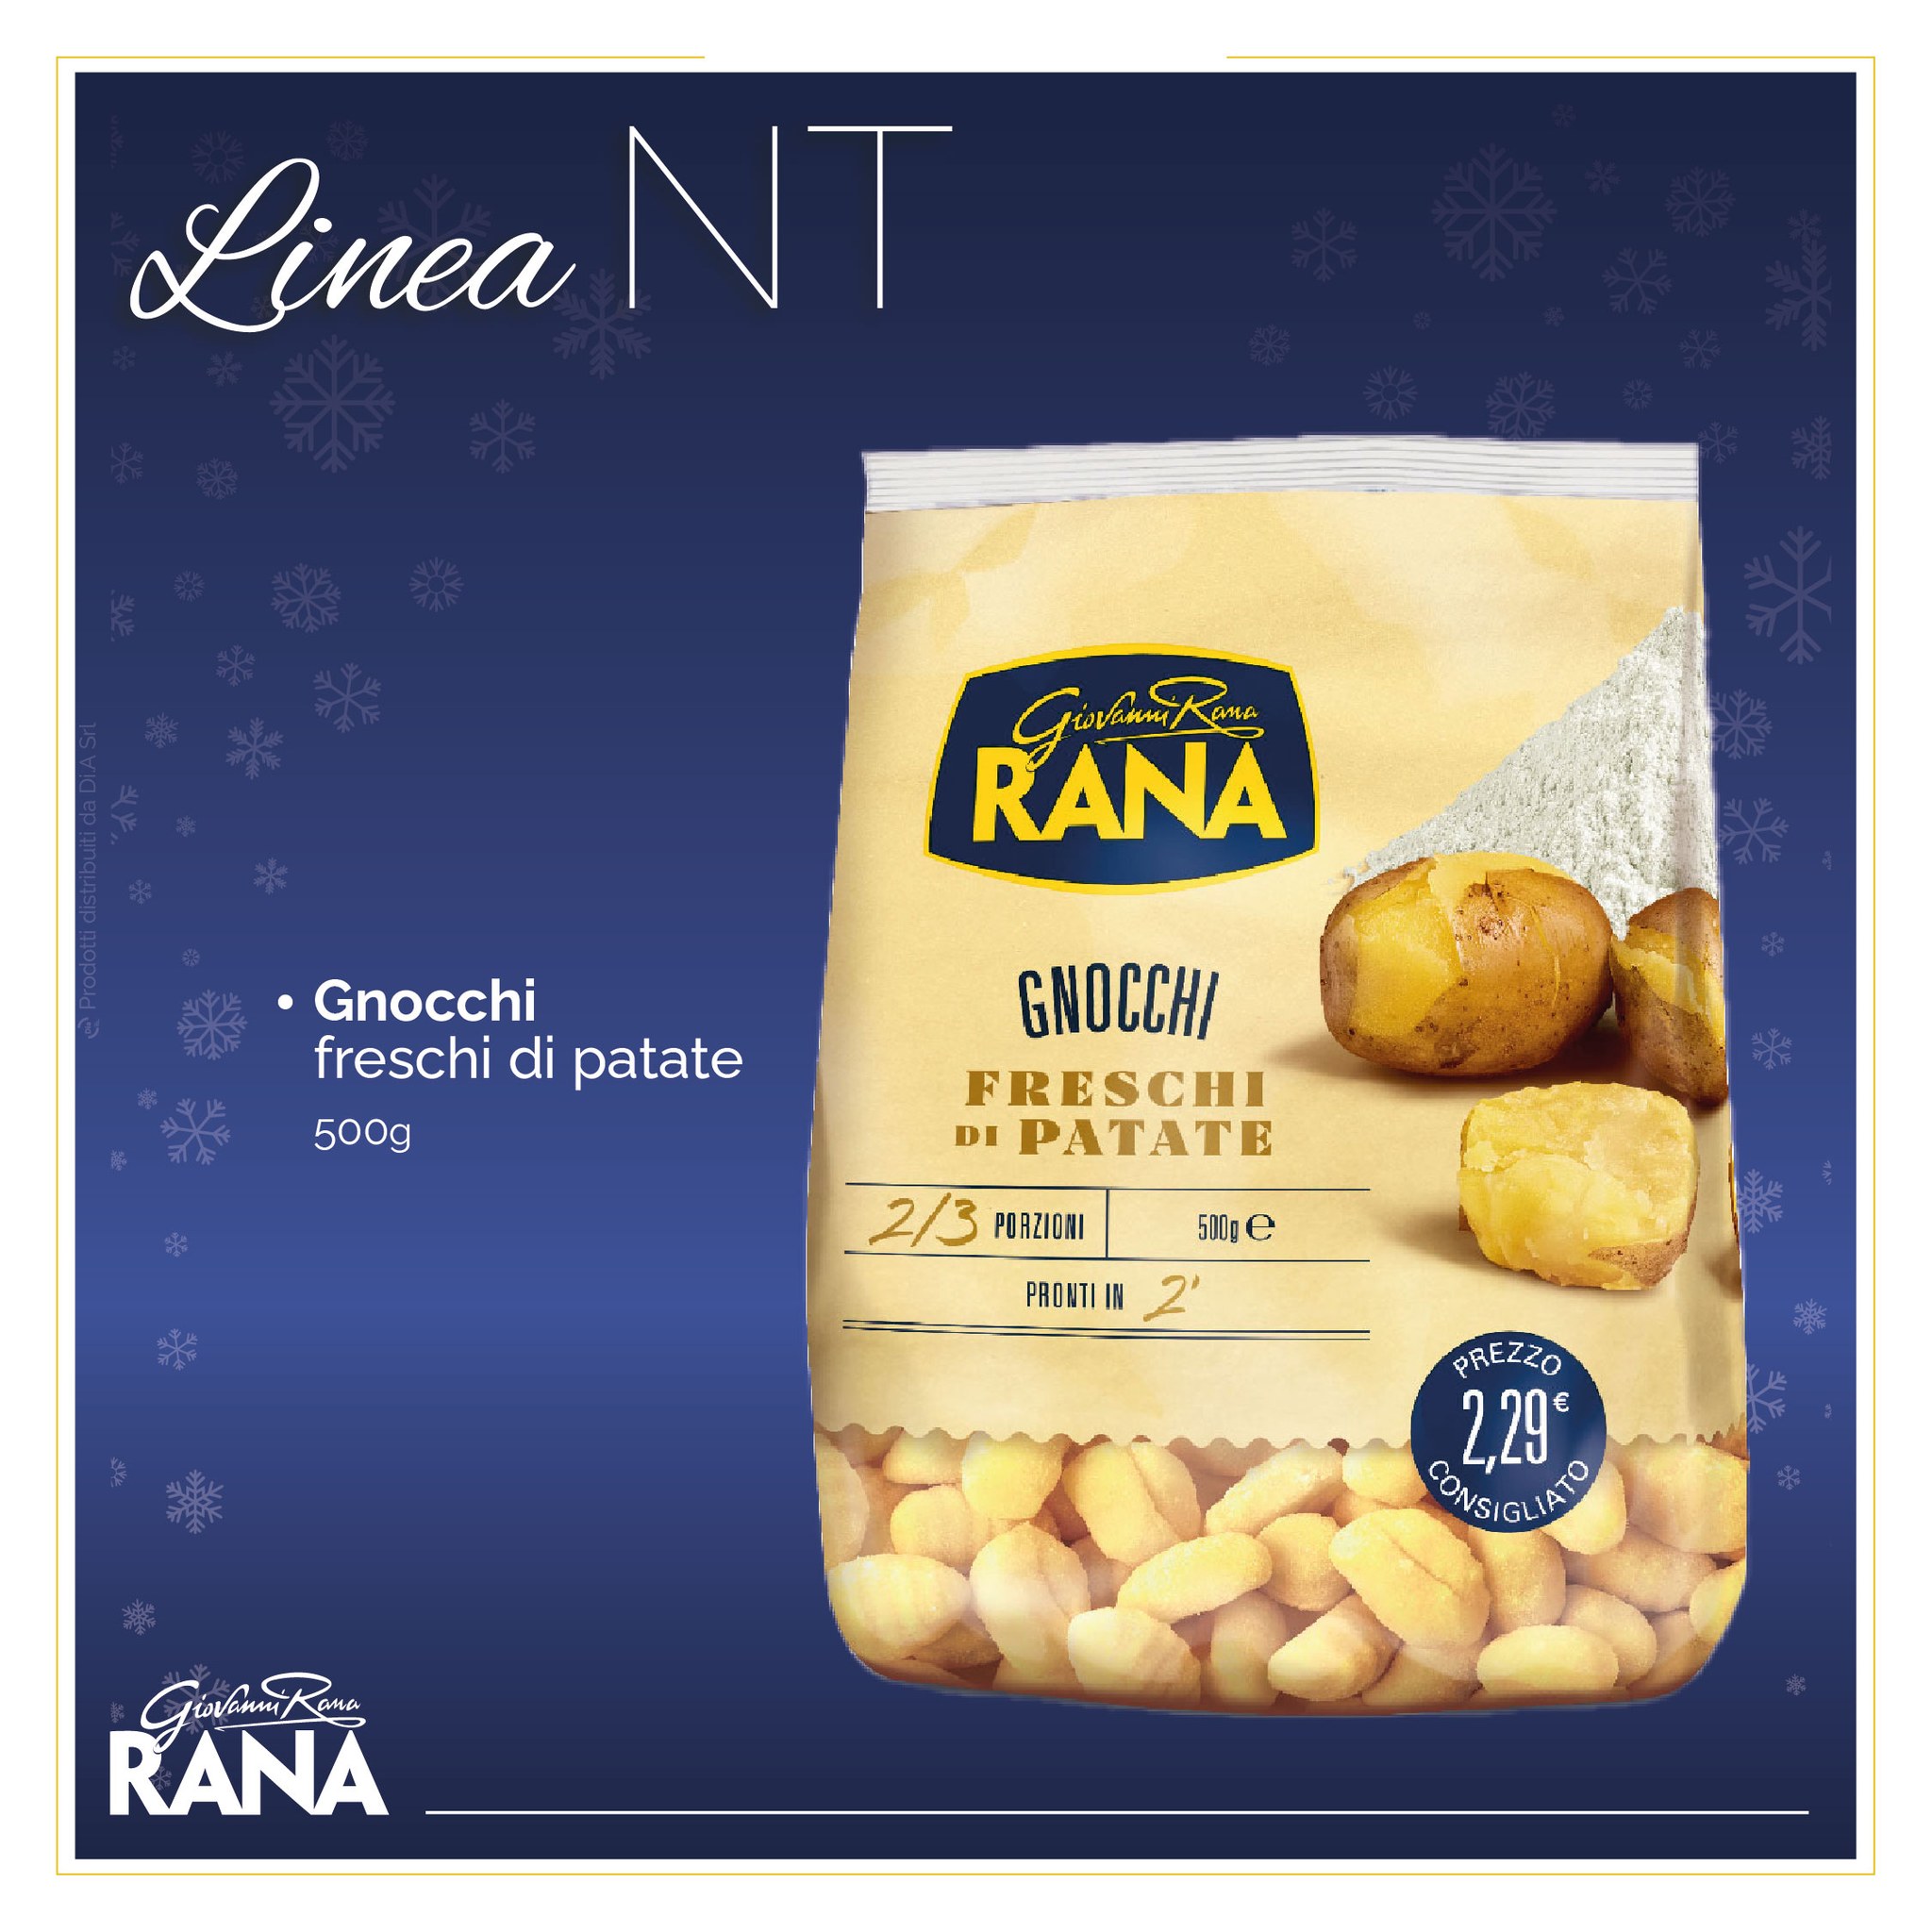 Gnocchi freschi di patate 500g. Scopri il meglio della pasta fresca Giovanni Rana Linea NT. In esclusiva su Dialivery di Dia Srl